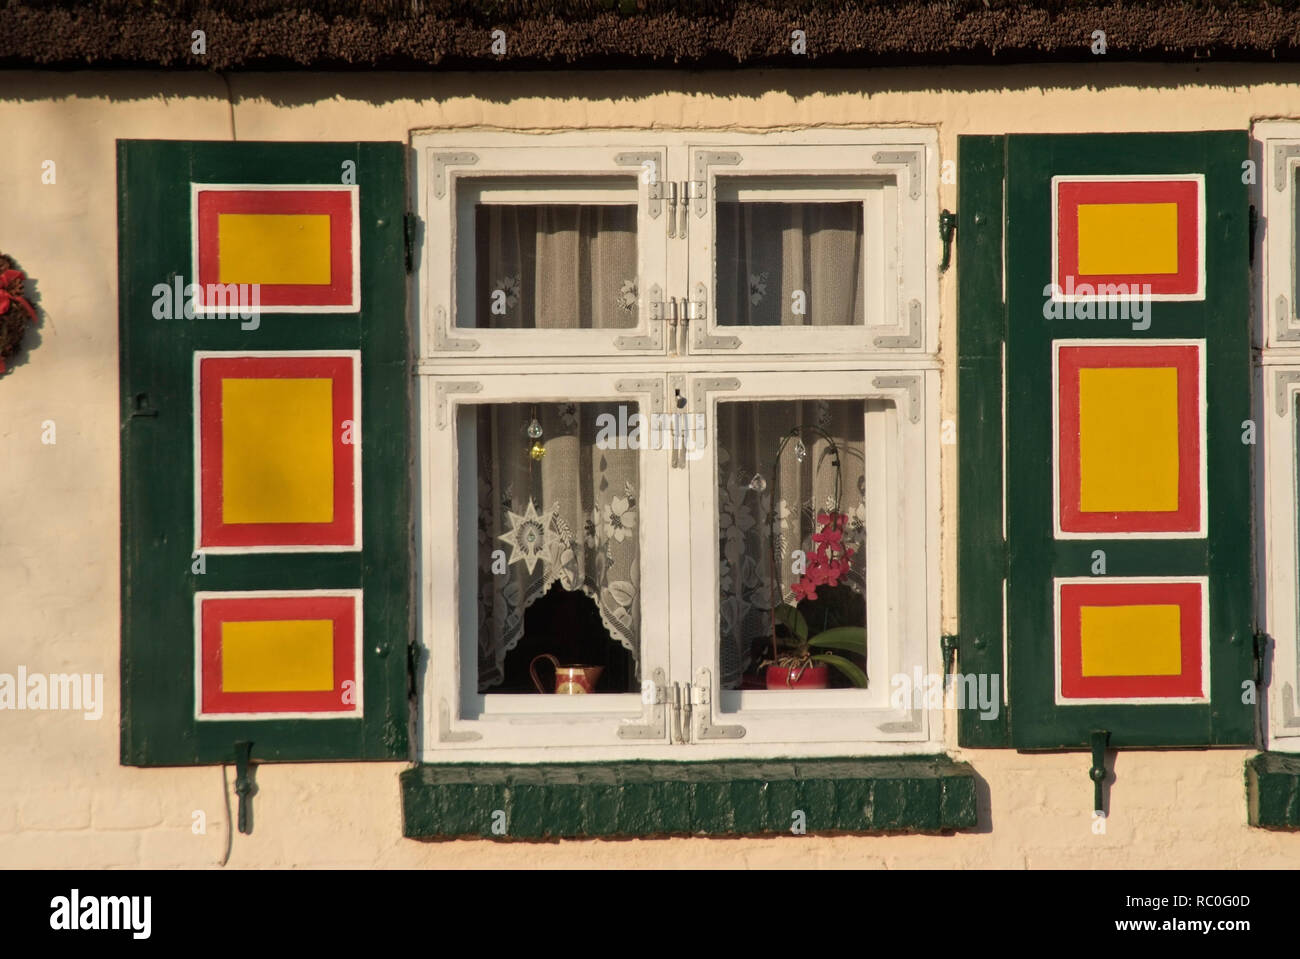 Fenster im alten Kapitänshaus, Born, Darss, Fischland-Darss-Zingst, Mecklenburg-Vorpommern, Deutschland, Europa | window in an old captain's house, Bo Stock Photo